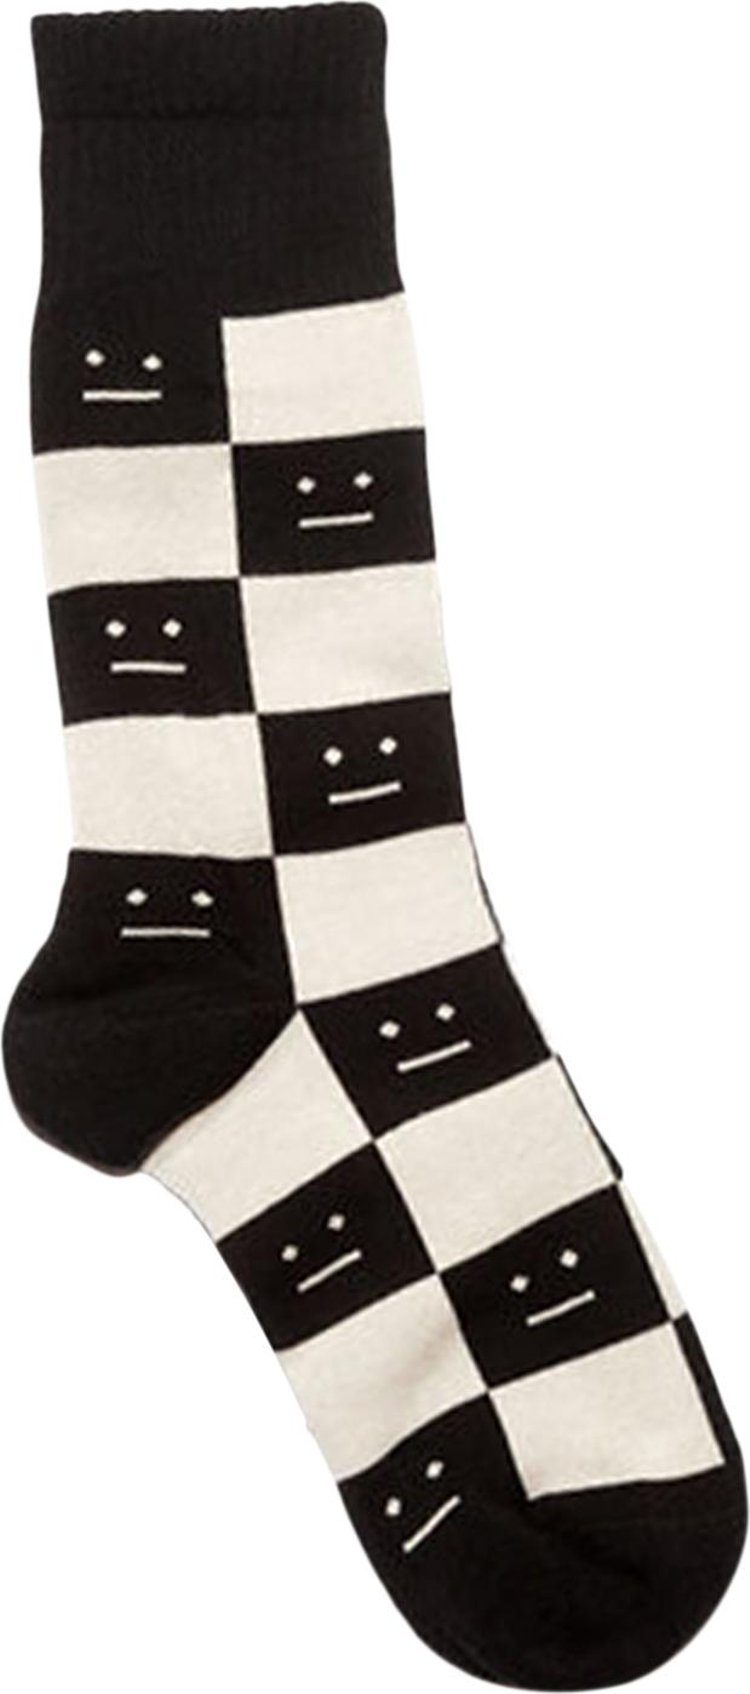 Acne Studios Checkerboard Socks 'Black'